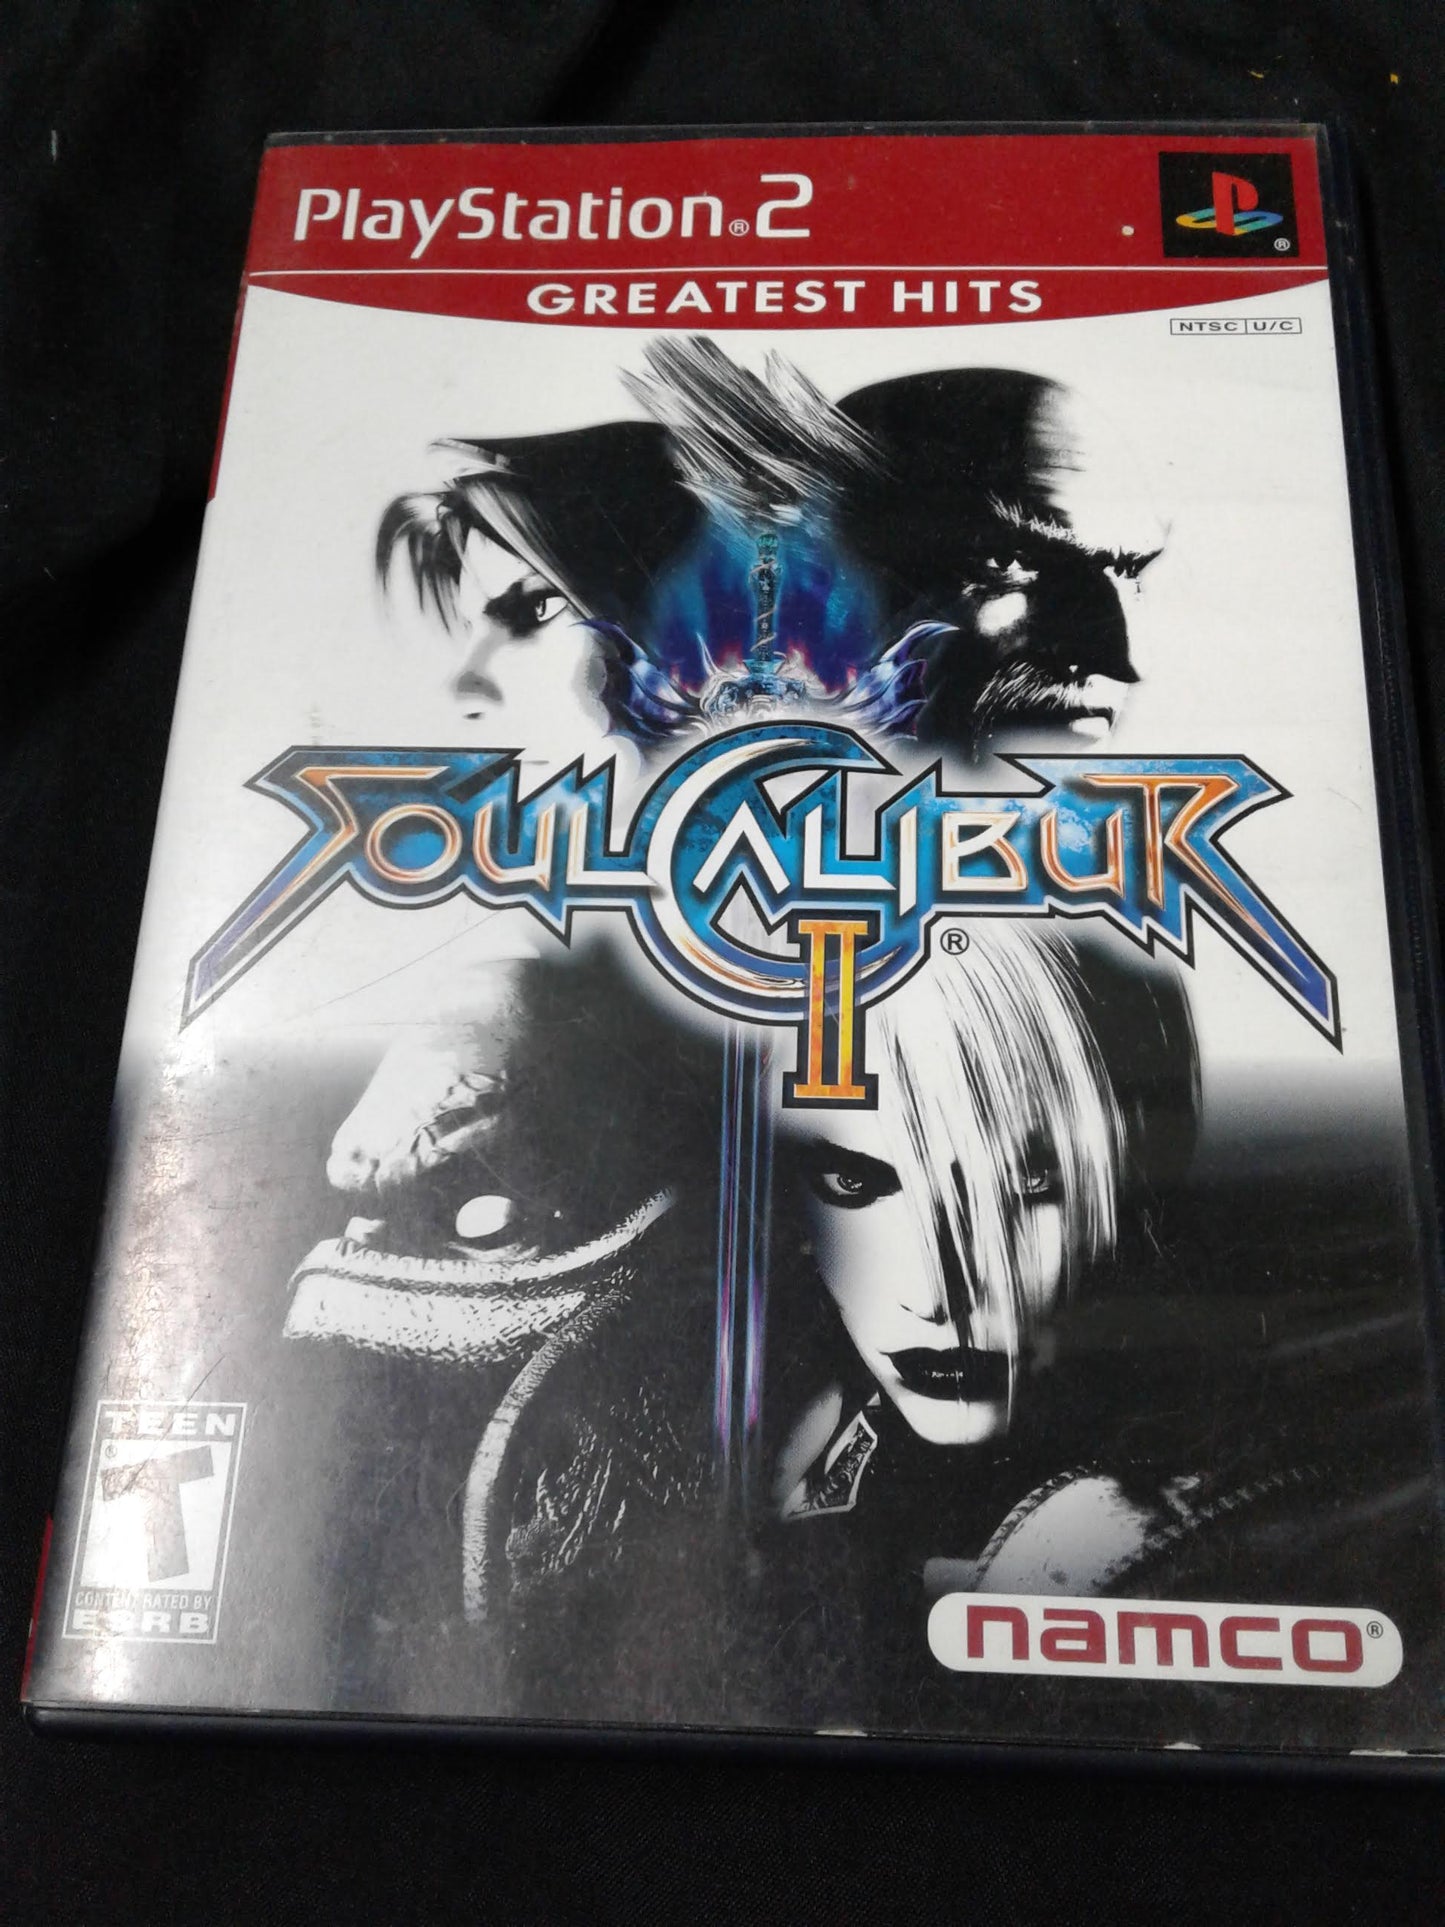 Playstation 2 Soul Calibur II